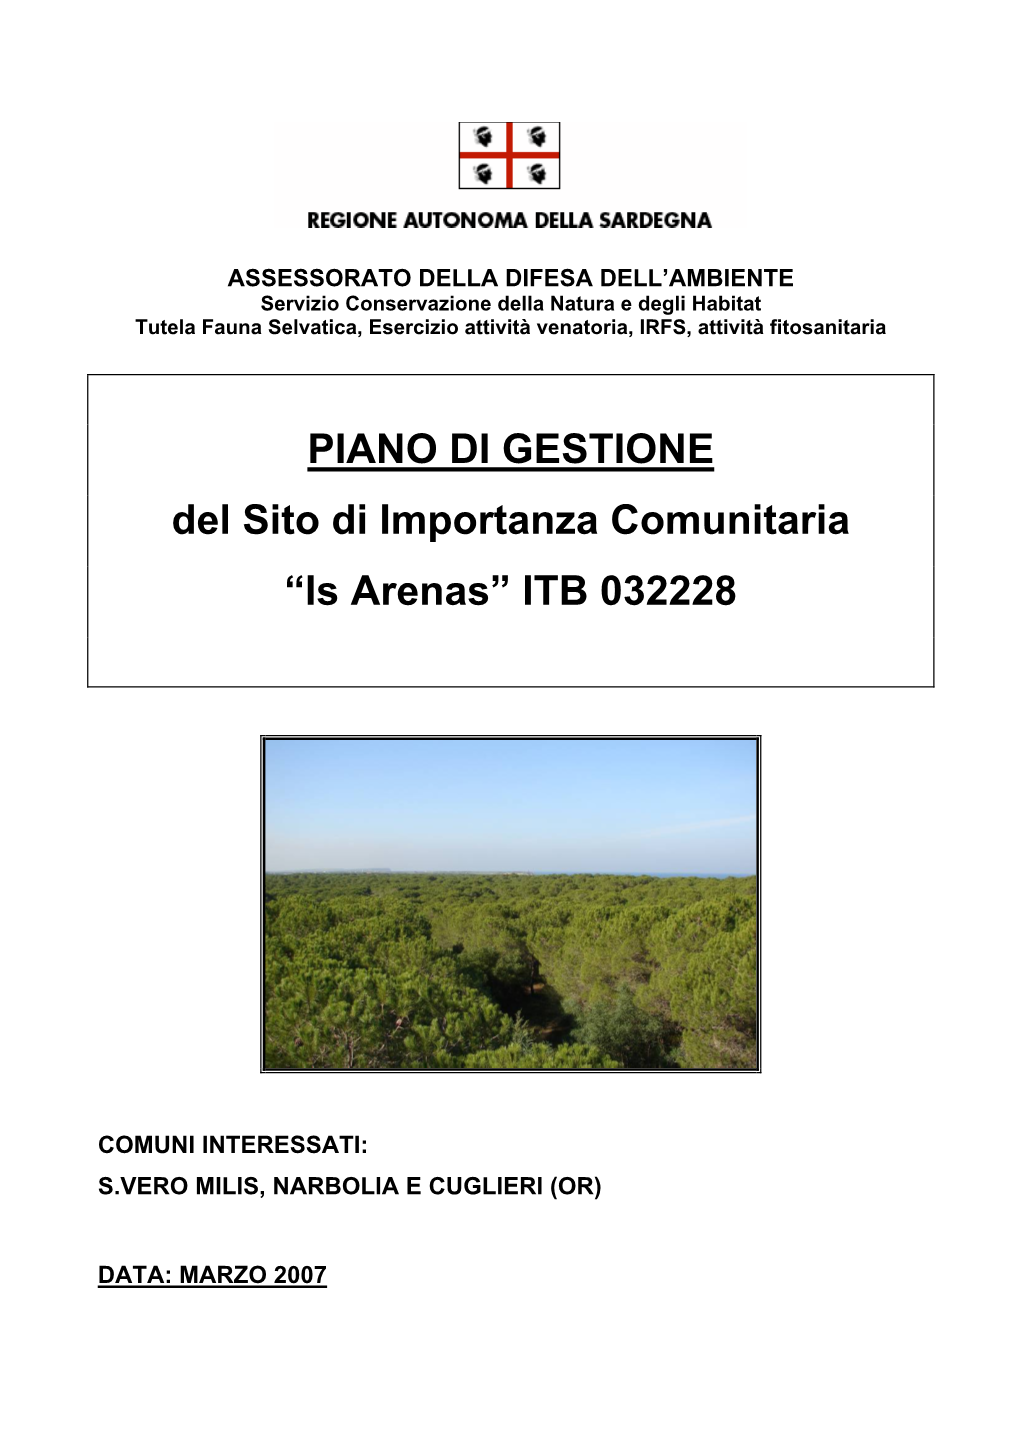 PIANO DI GESTIONE Del Sito Di Importanza Comunitaria “Is Arenas” ITB 032228